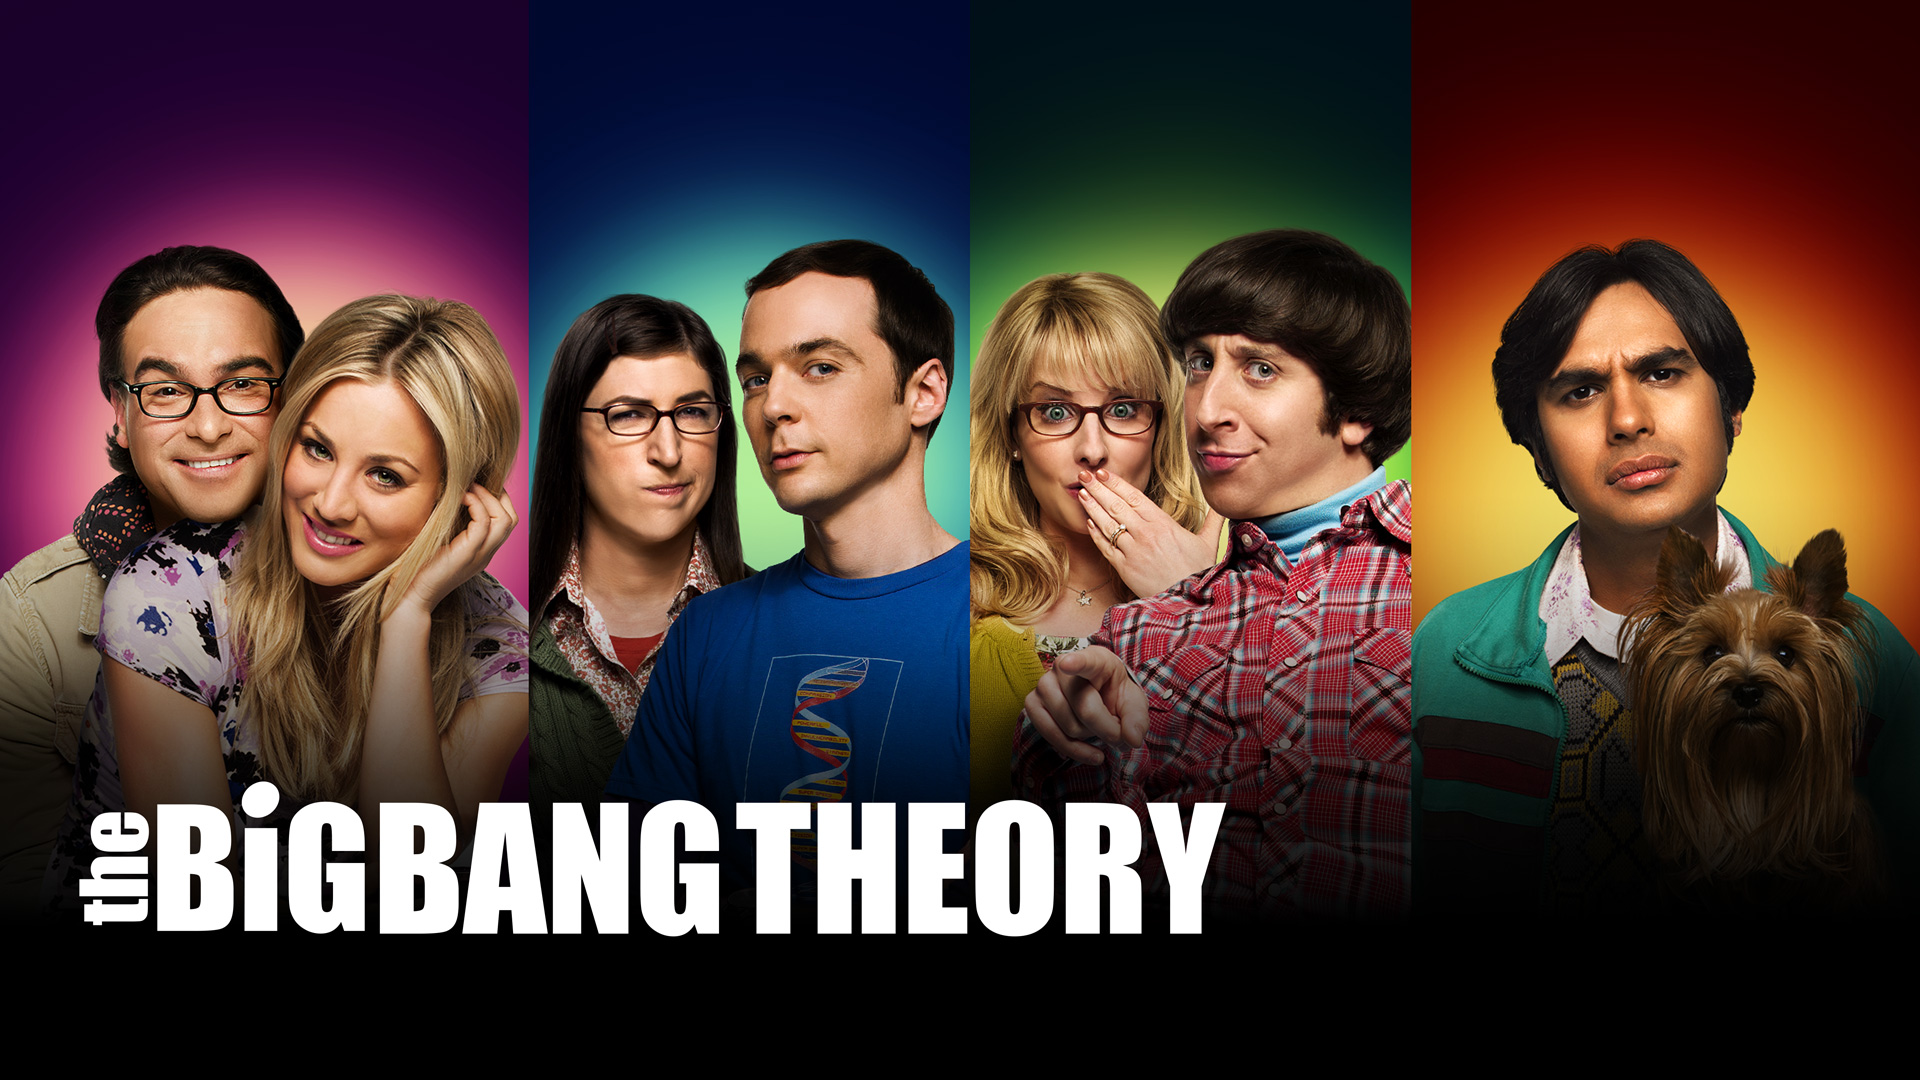 He Big Bang Theory